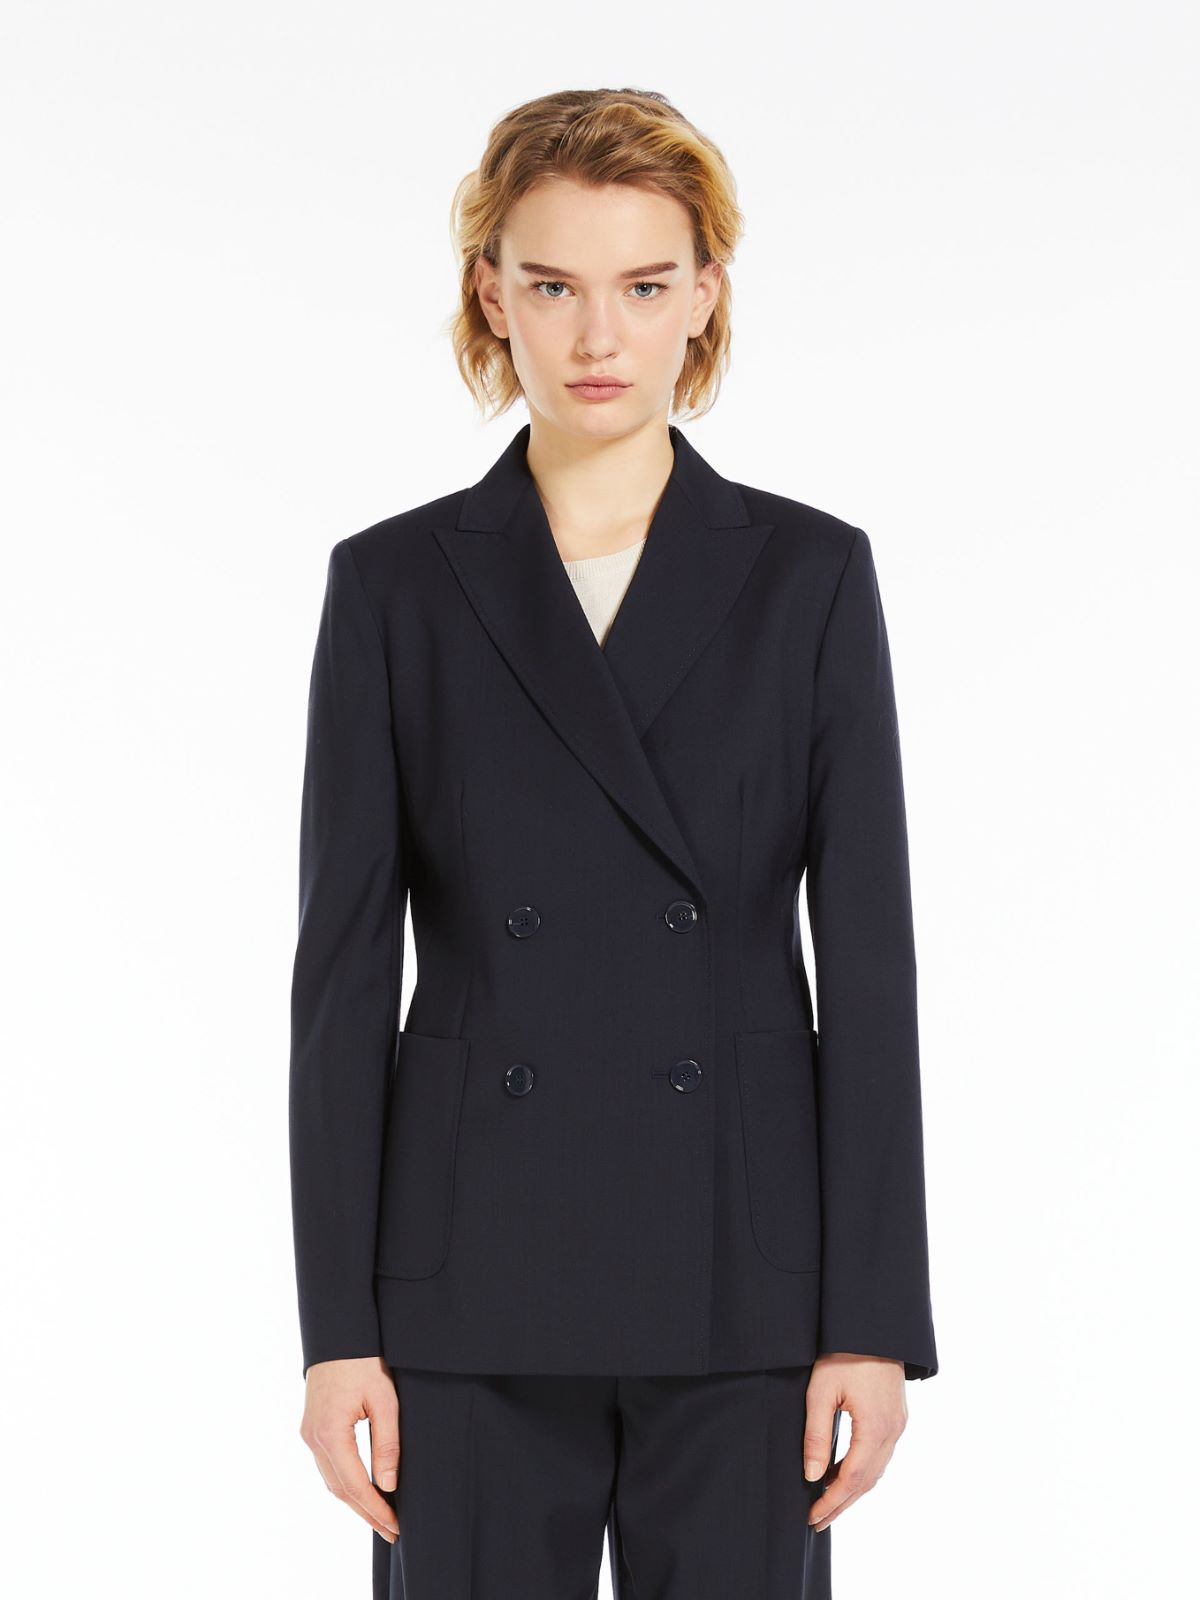 Tailored woollen cloth blazer, navy | Weekend Max Mara